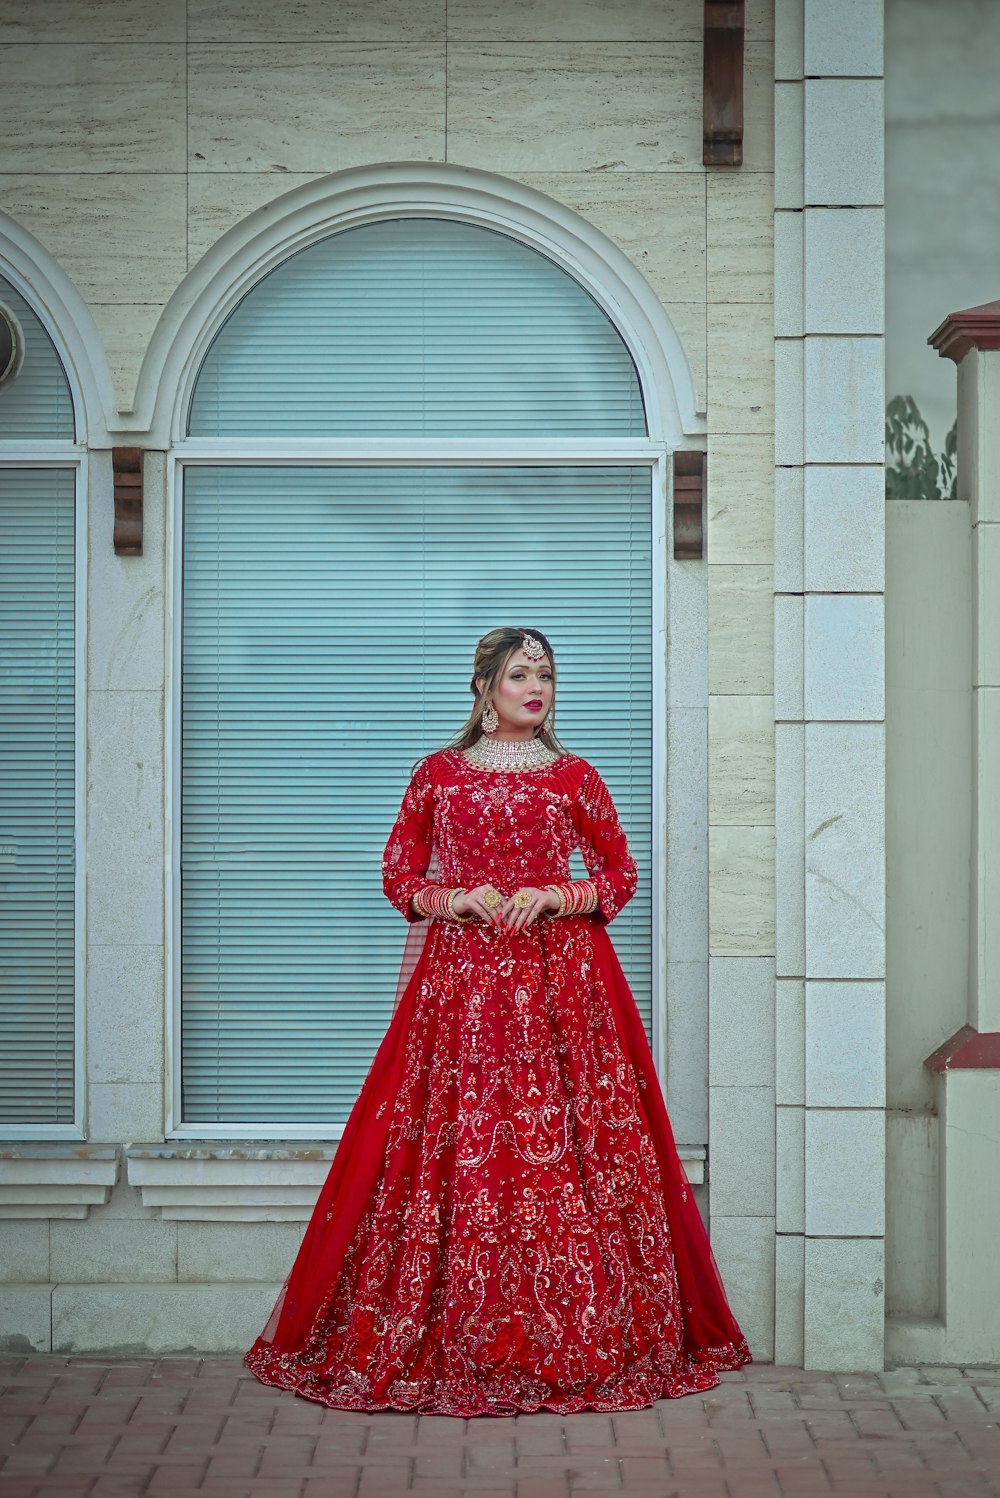 Eine Frau in einem roten Kleid steht vor einem Gebäude